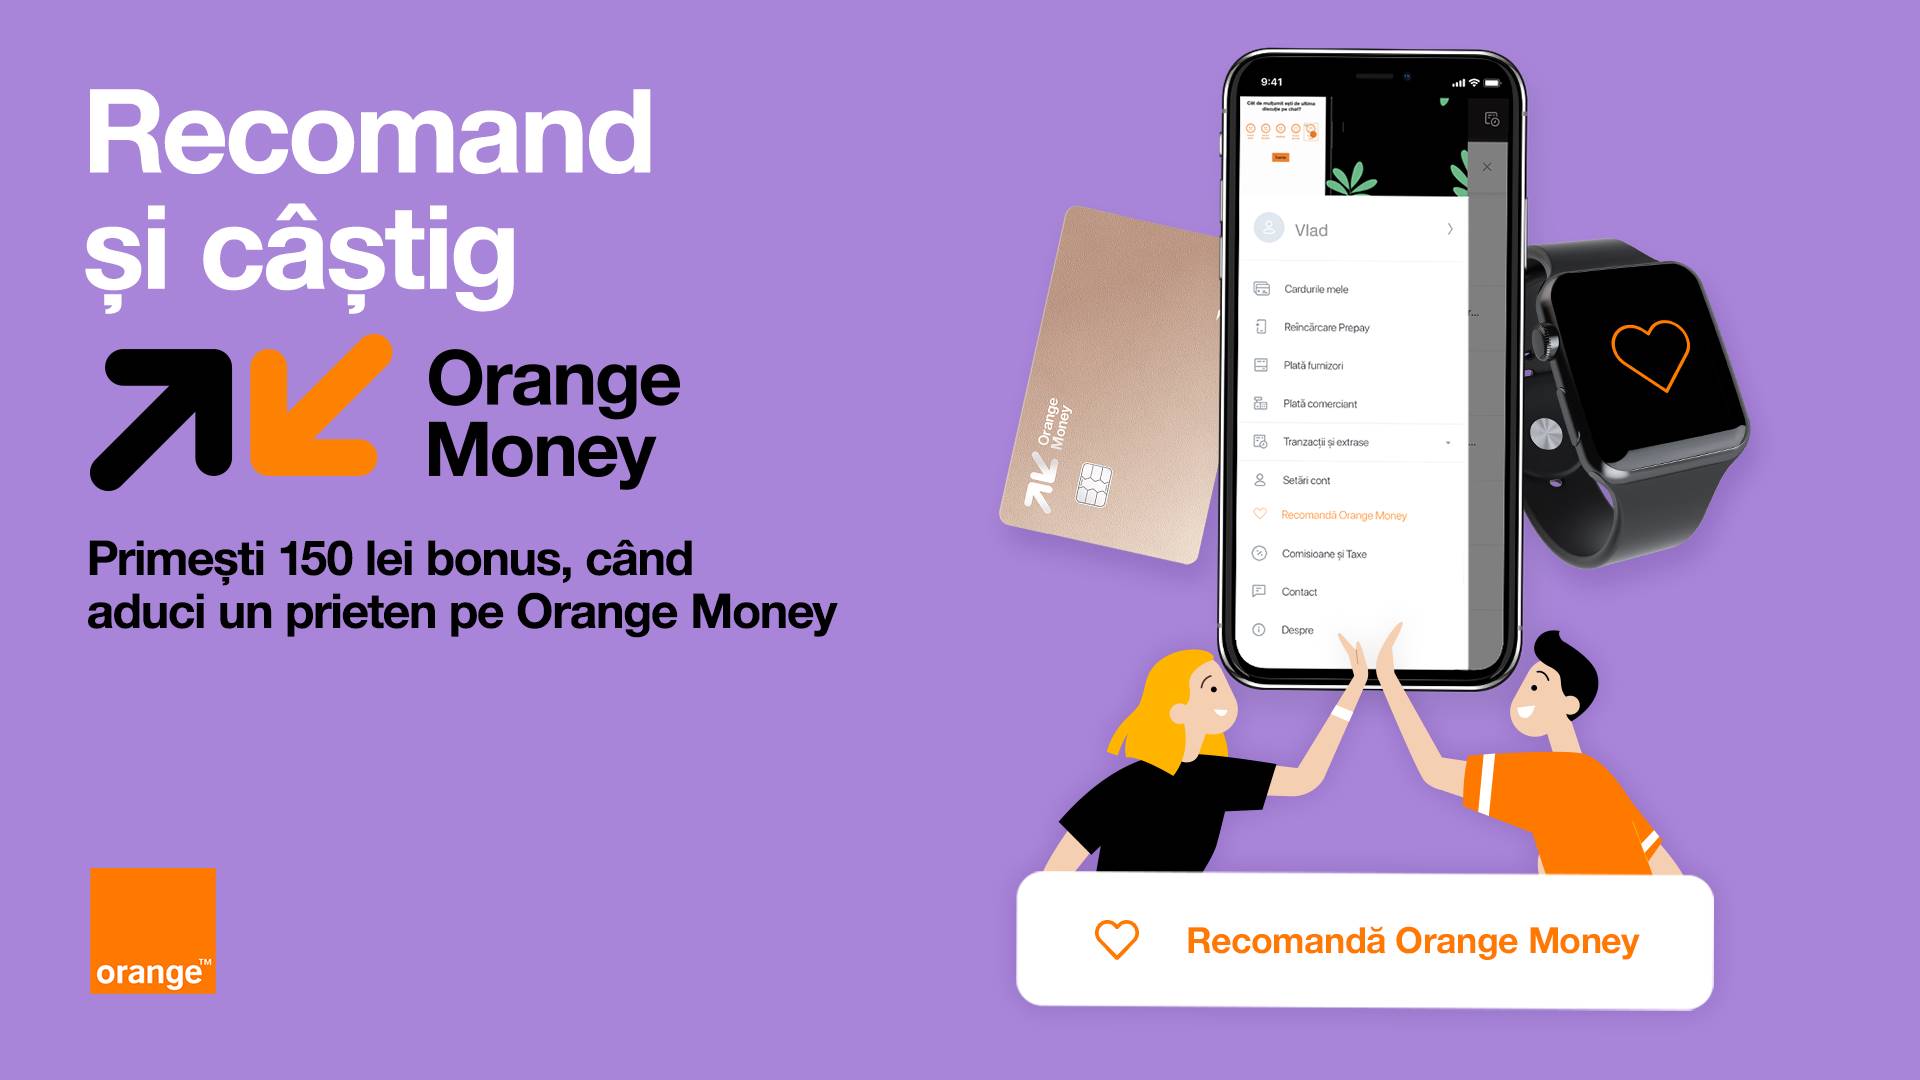 Oranges officielle meddelelse, hvor mange penge giver det GRATIS henvisninger til rumænske kunder